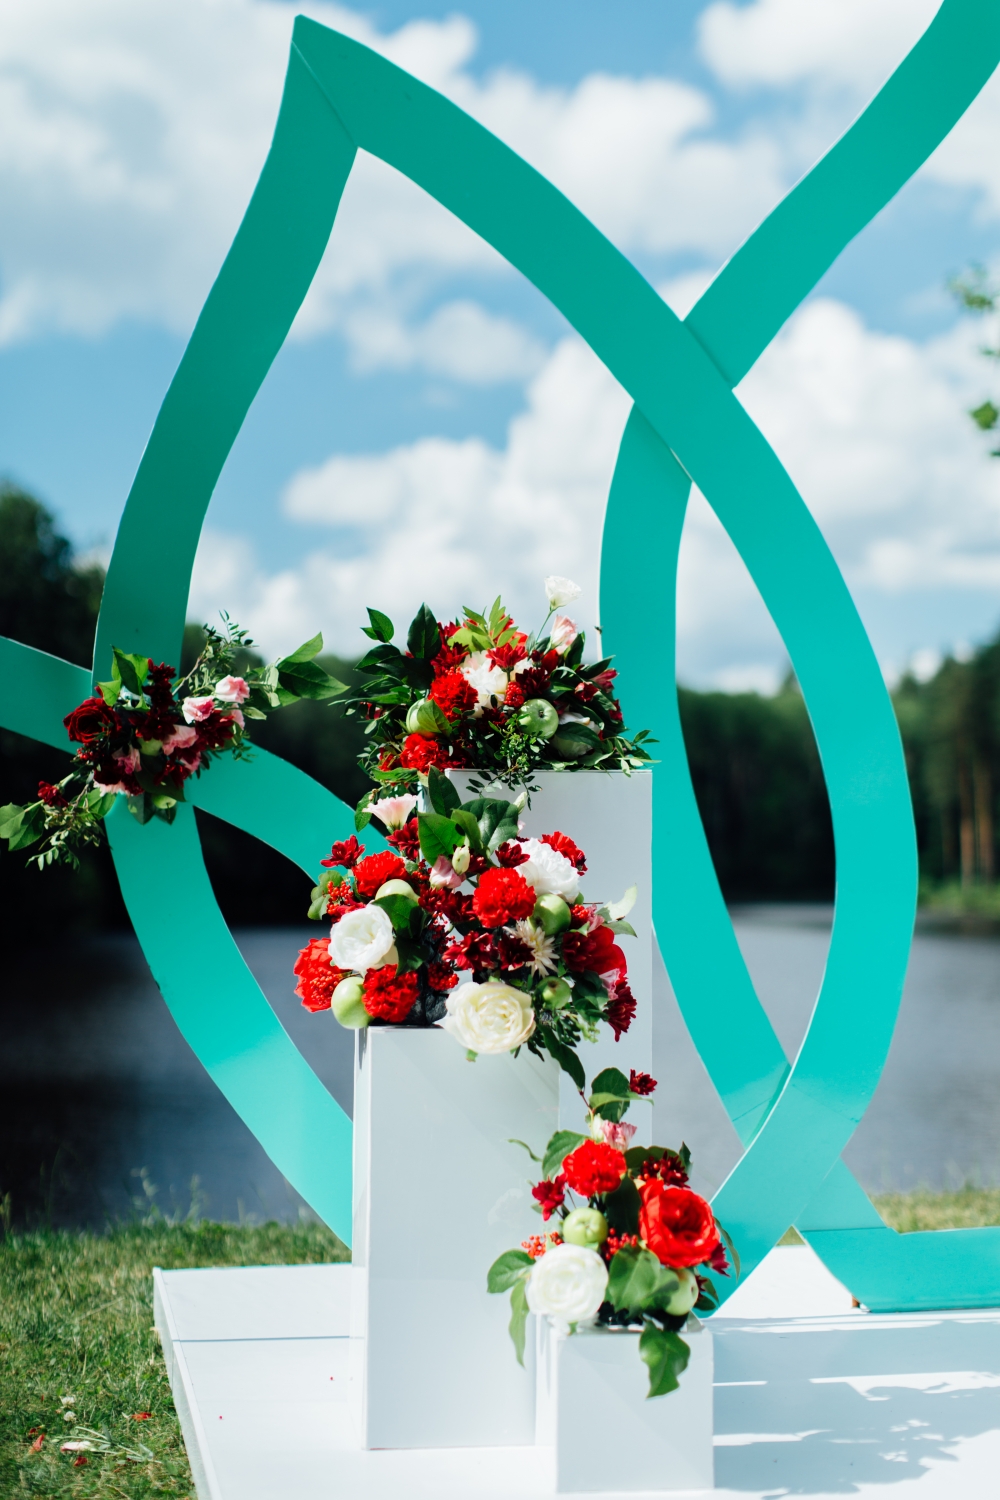 Свадьба в цвете тиффани, выездная регистрация, выездная церемония на берегу реки в тамбове,цветочные композиции с яблоками